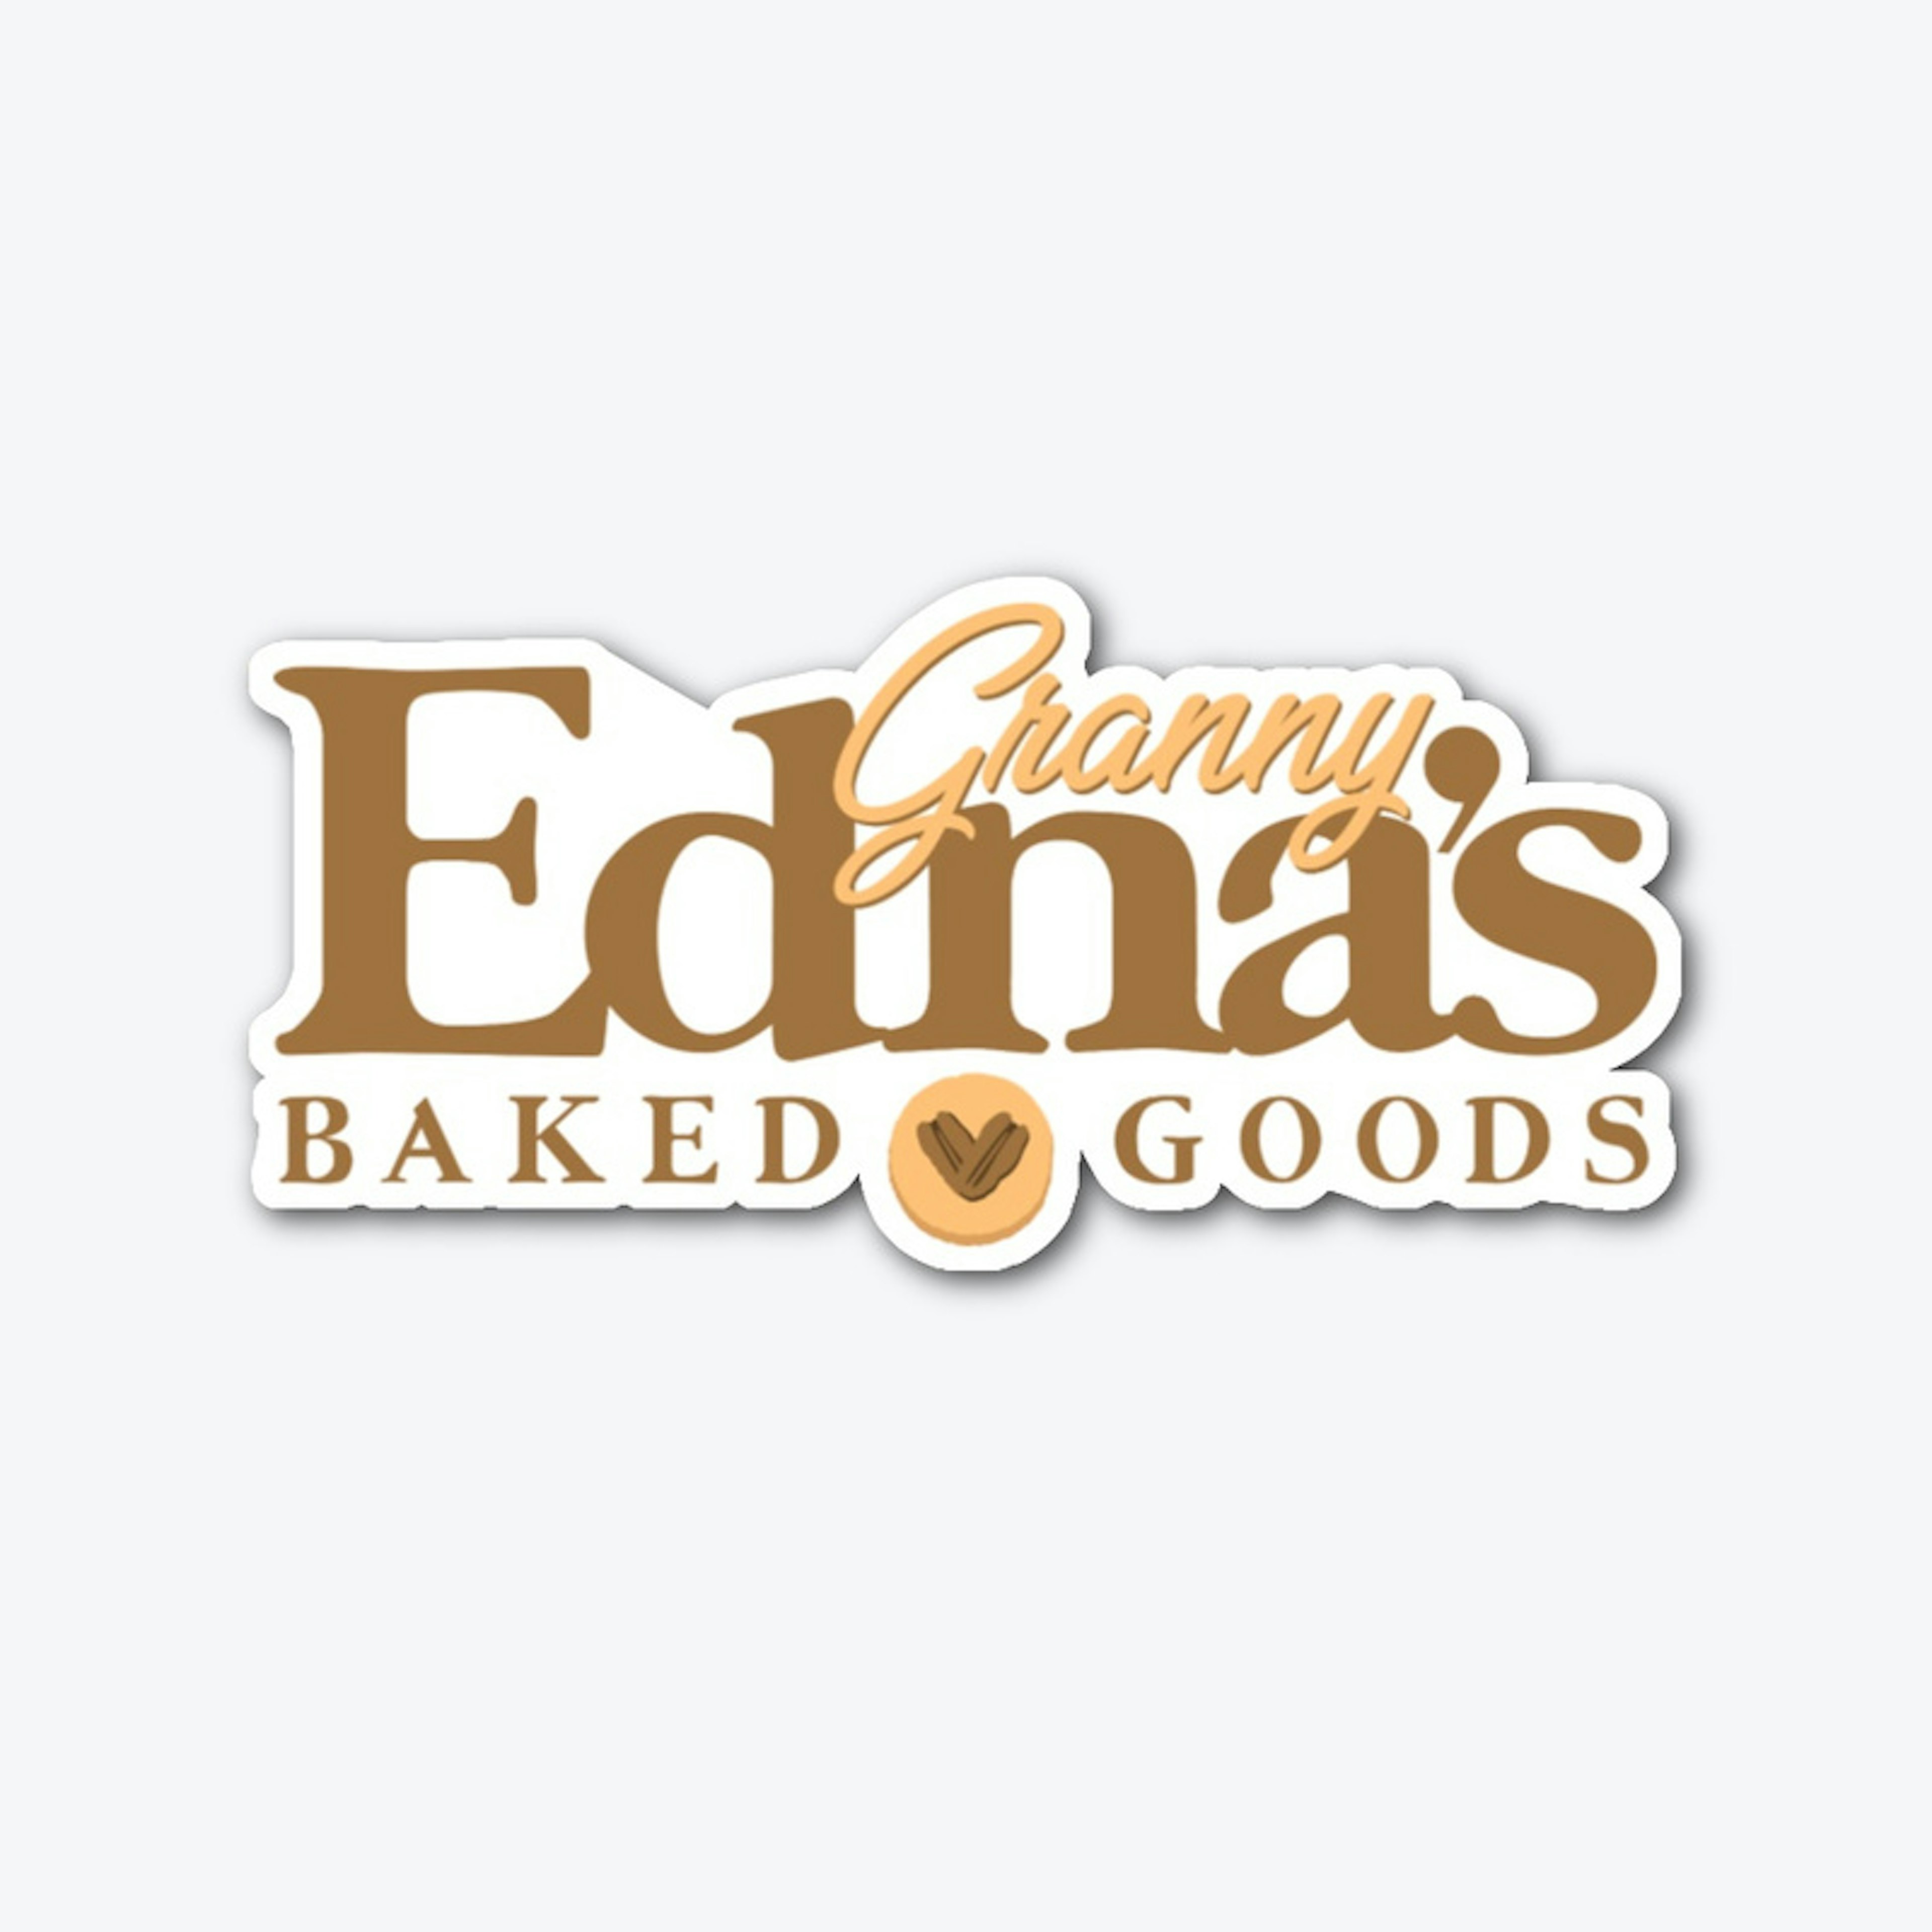 Granny Edna's Baked Goods